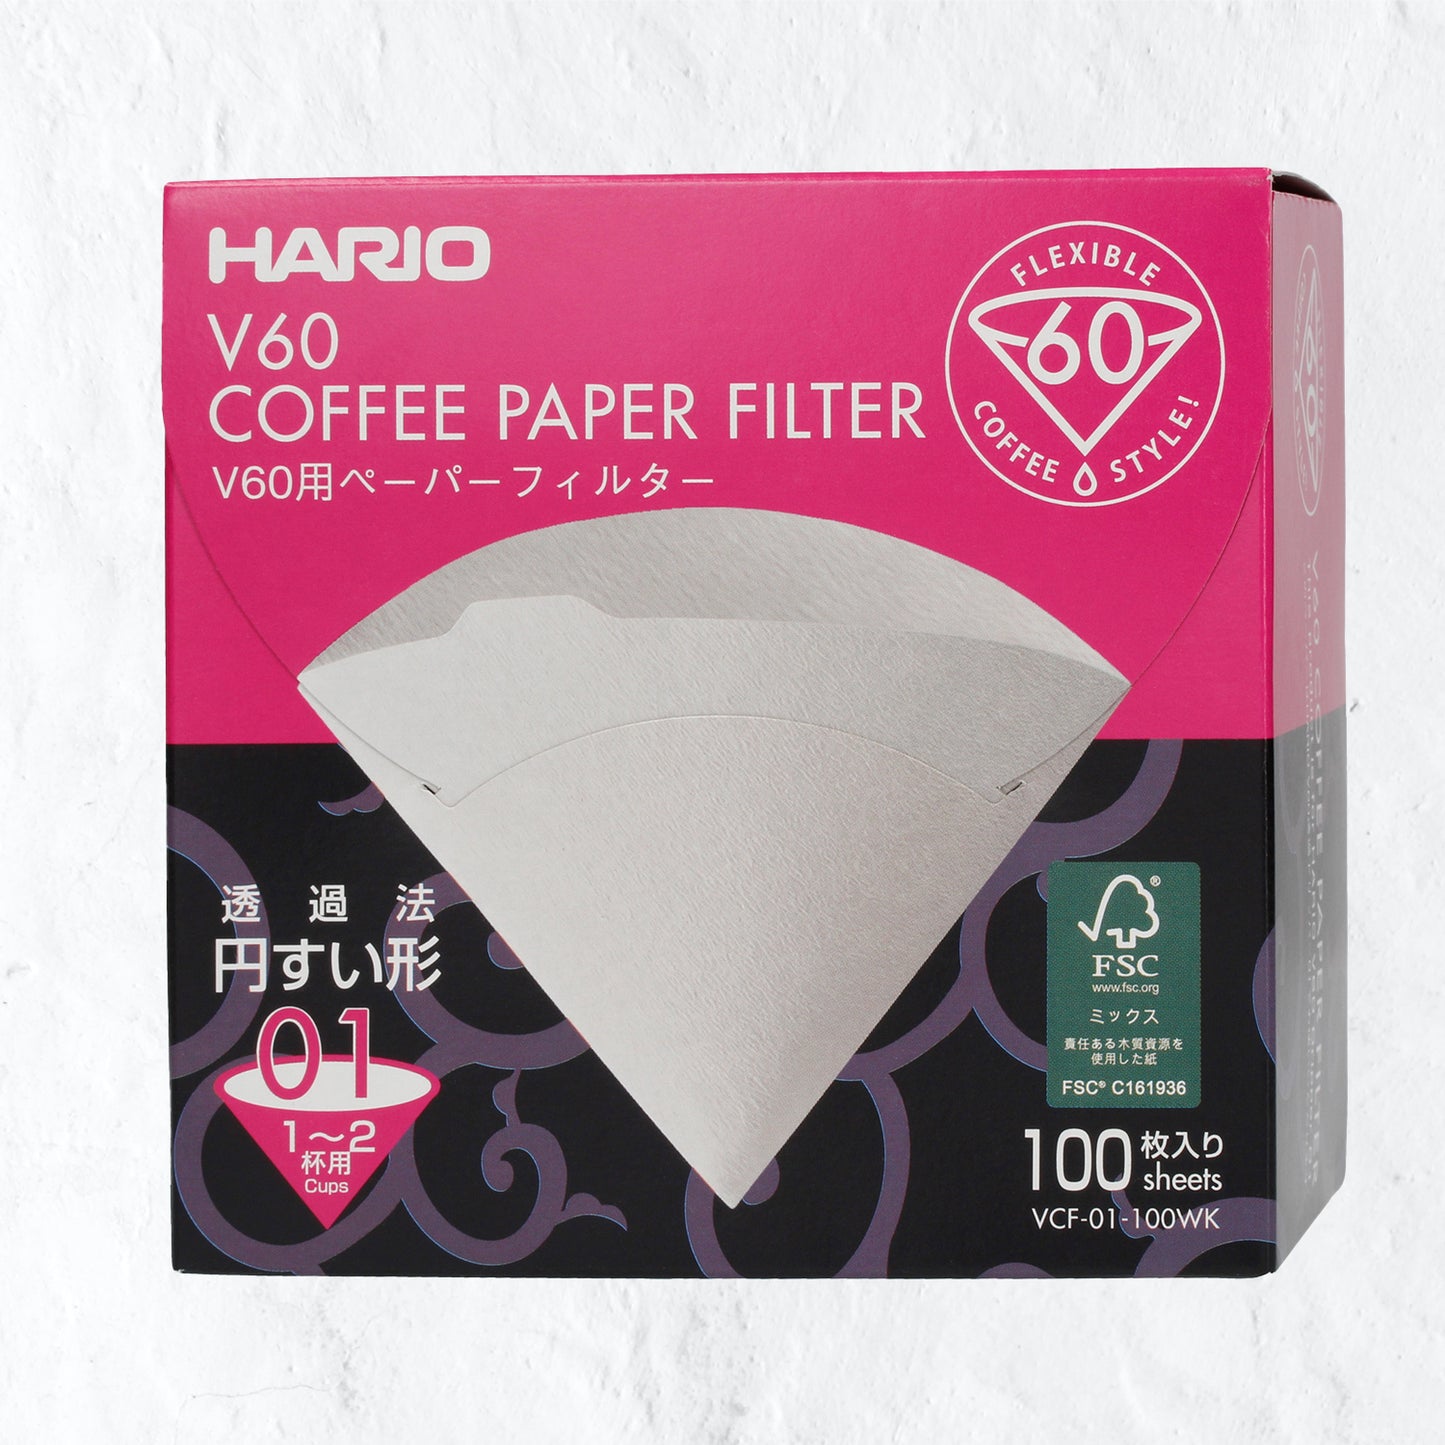 Hario paper filter - V60-01/100